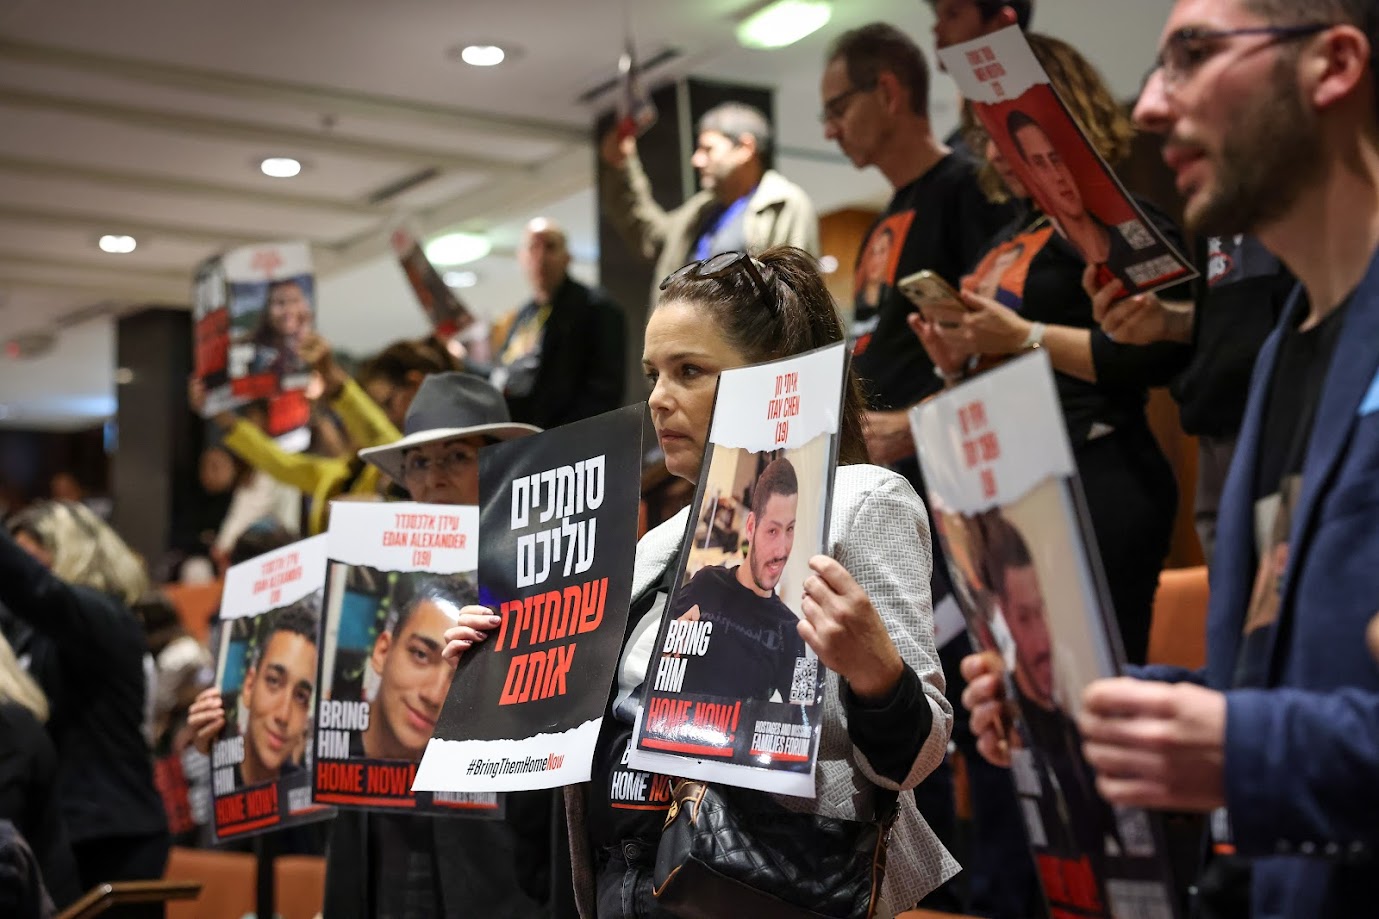 以色列國會全體會議，旁聽席上有人質家屬舉著標語抗議。圖/取自The Knesset @KnessetENG